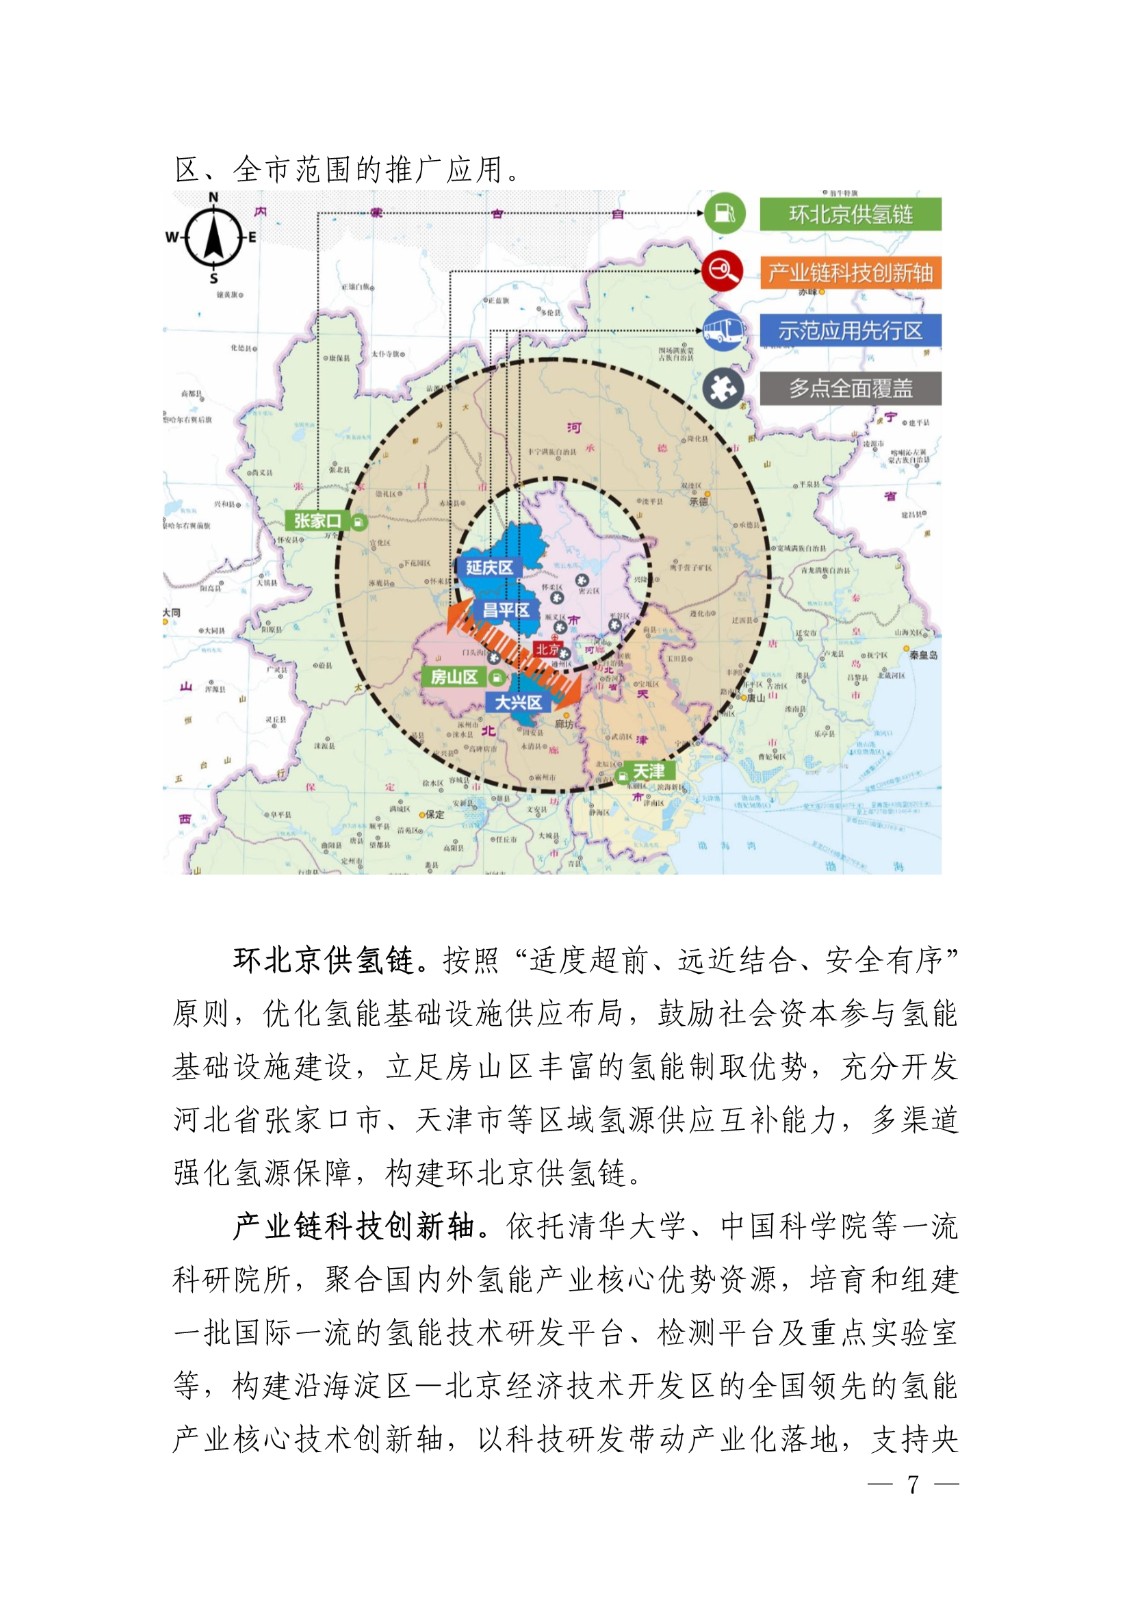 10月30日，北京市经济和信息化局发布《北京市氢燃料电池汽车产业发展规划（2020-2025年）》。